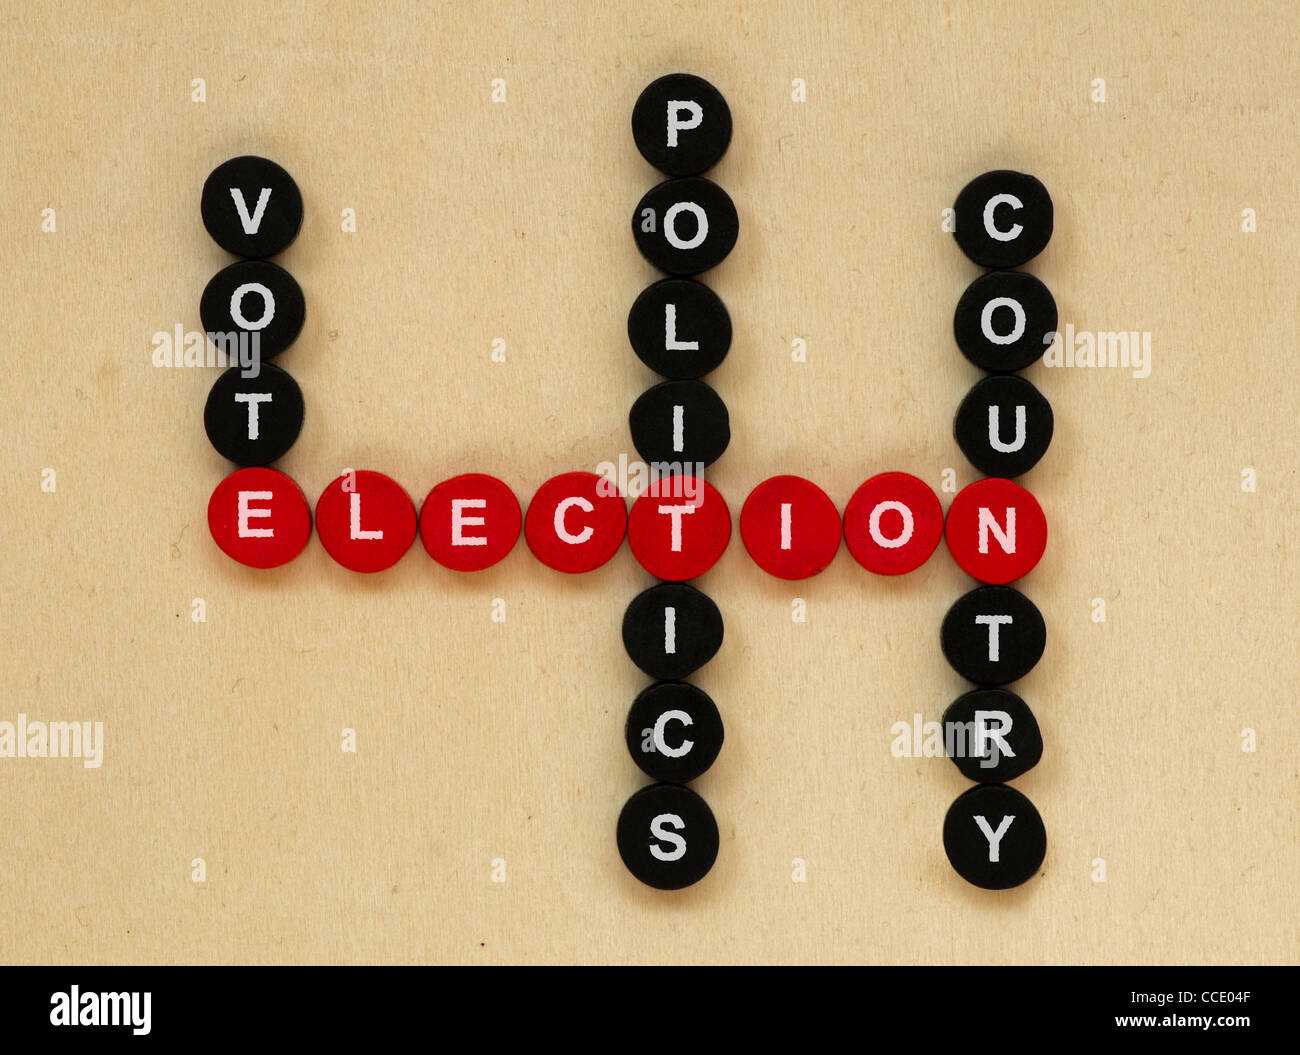 Las elecciones concepción textos en los crucigramas. Foto de stock